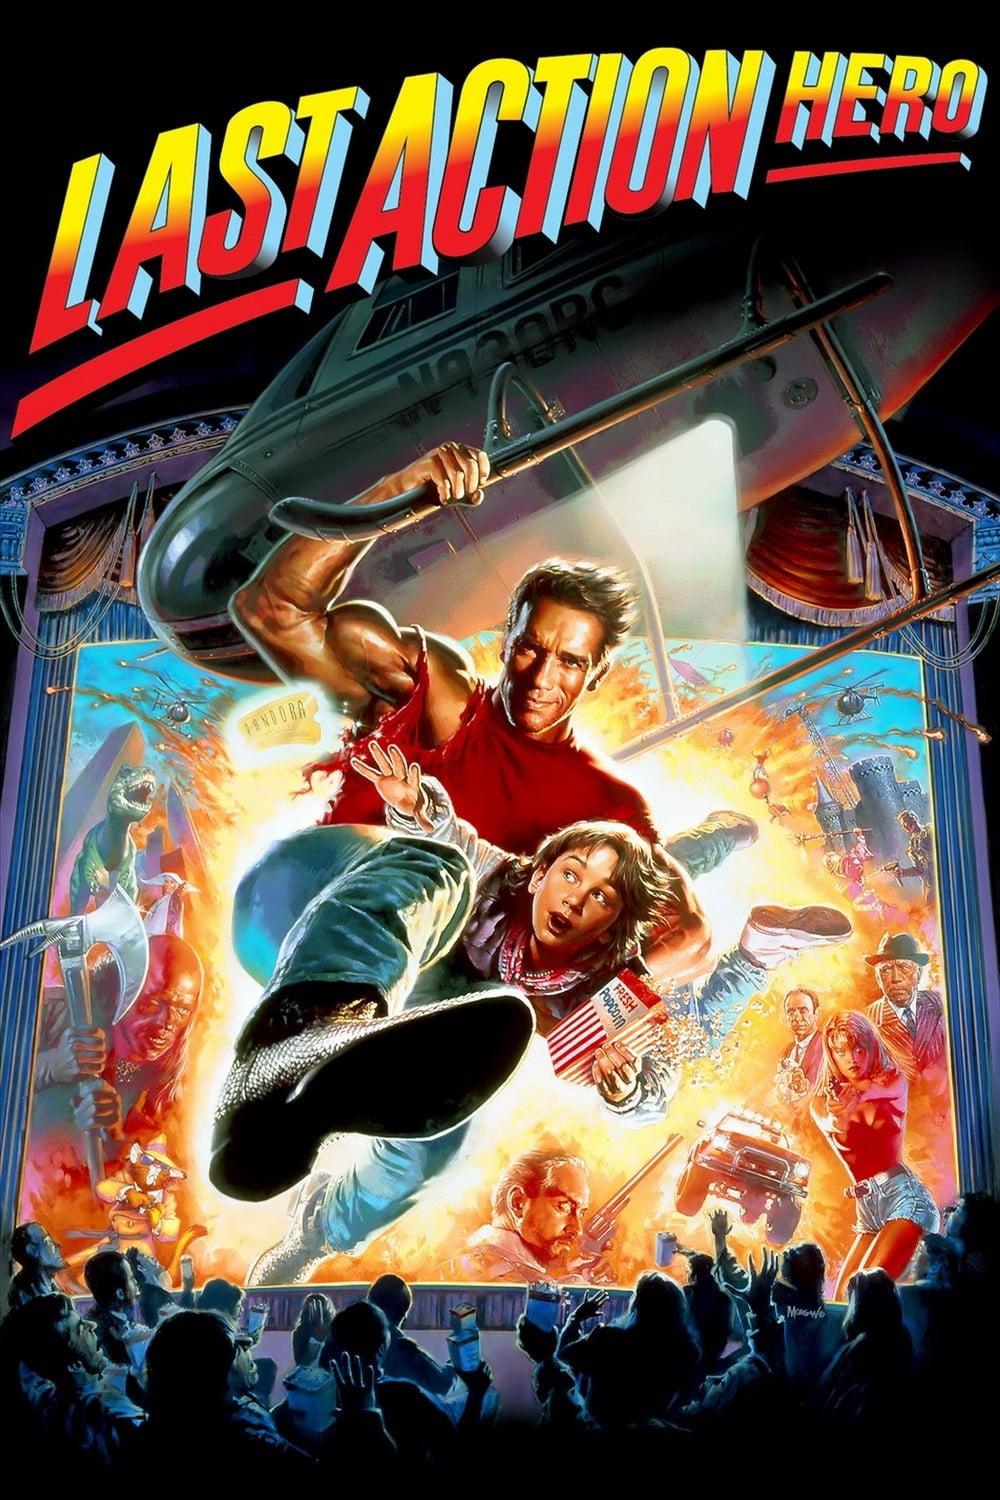 Poster Phim Người Hùng Cuối Cùng (Last Action Hero)